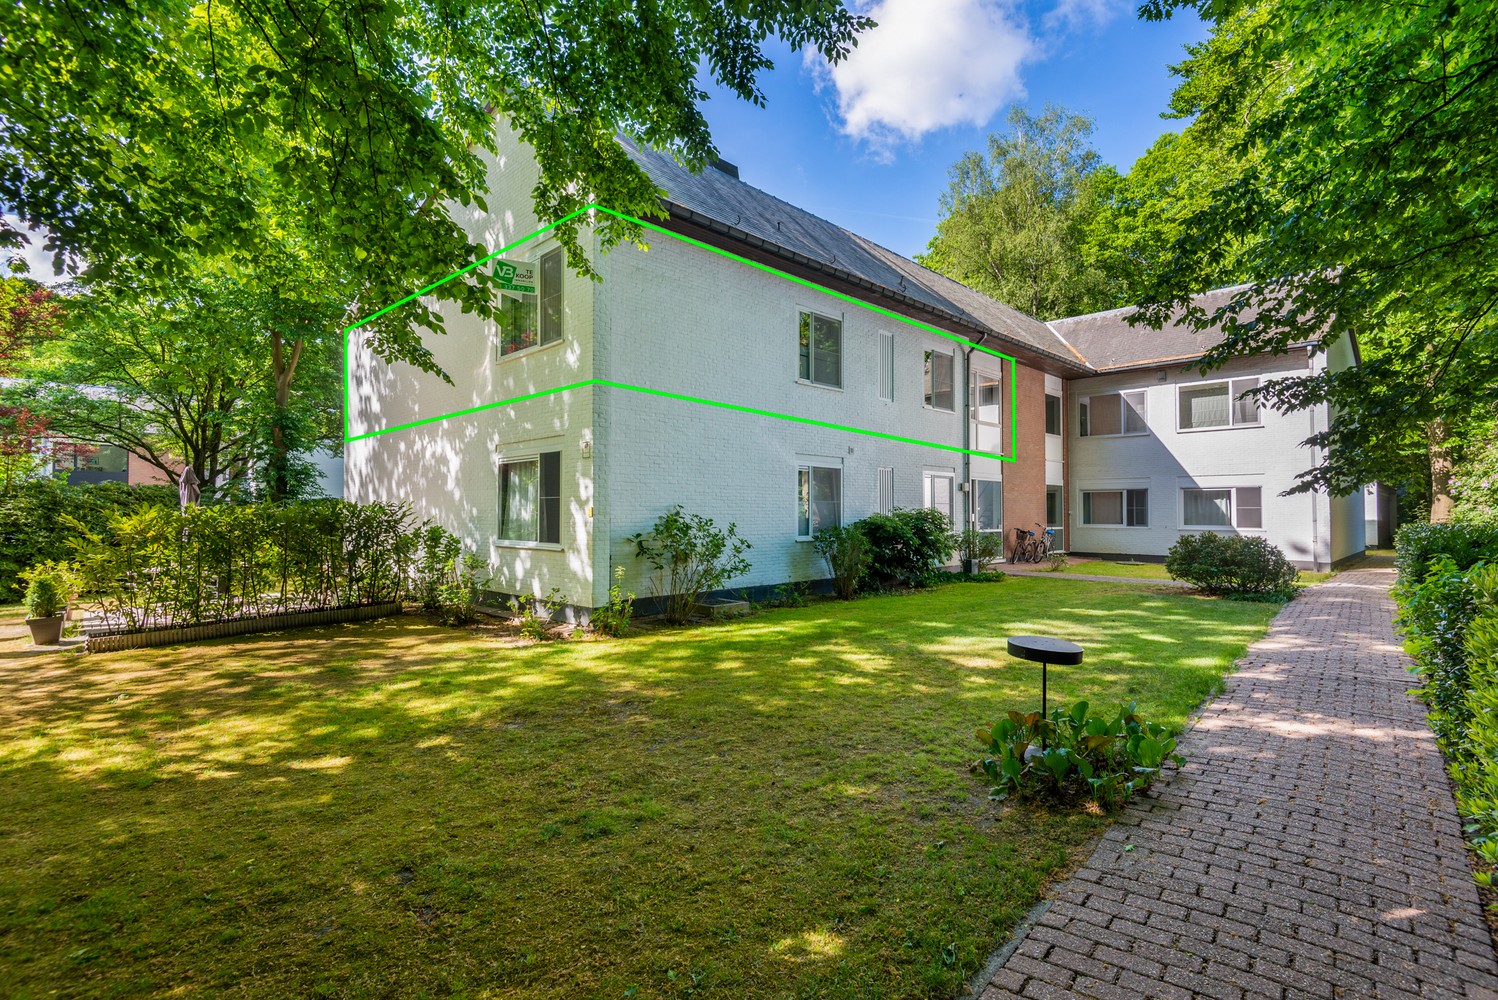 Riant appartement (148 m²) met twee slaapkamers, terras en omringd door groen. afbeelding 2